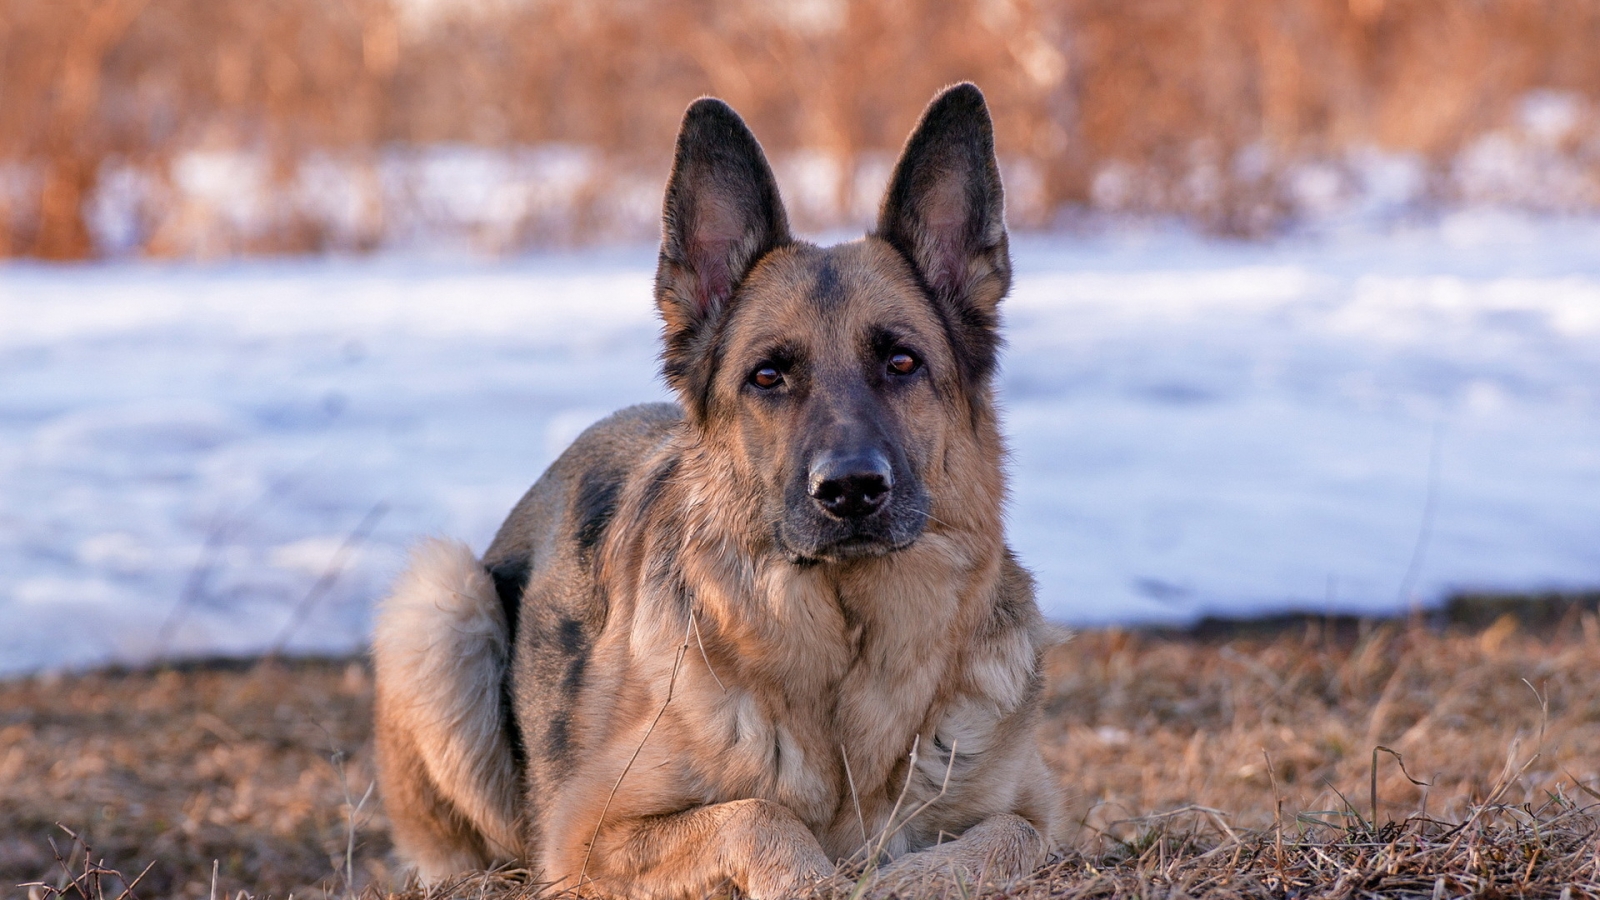 German Shepherd Dog for 1600 x 900 HDTV resolution